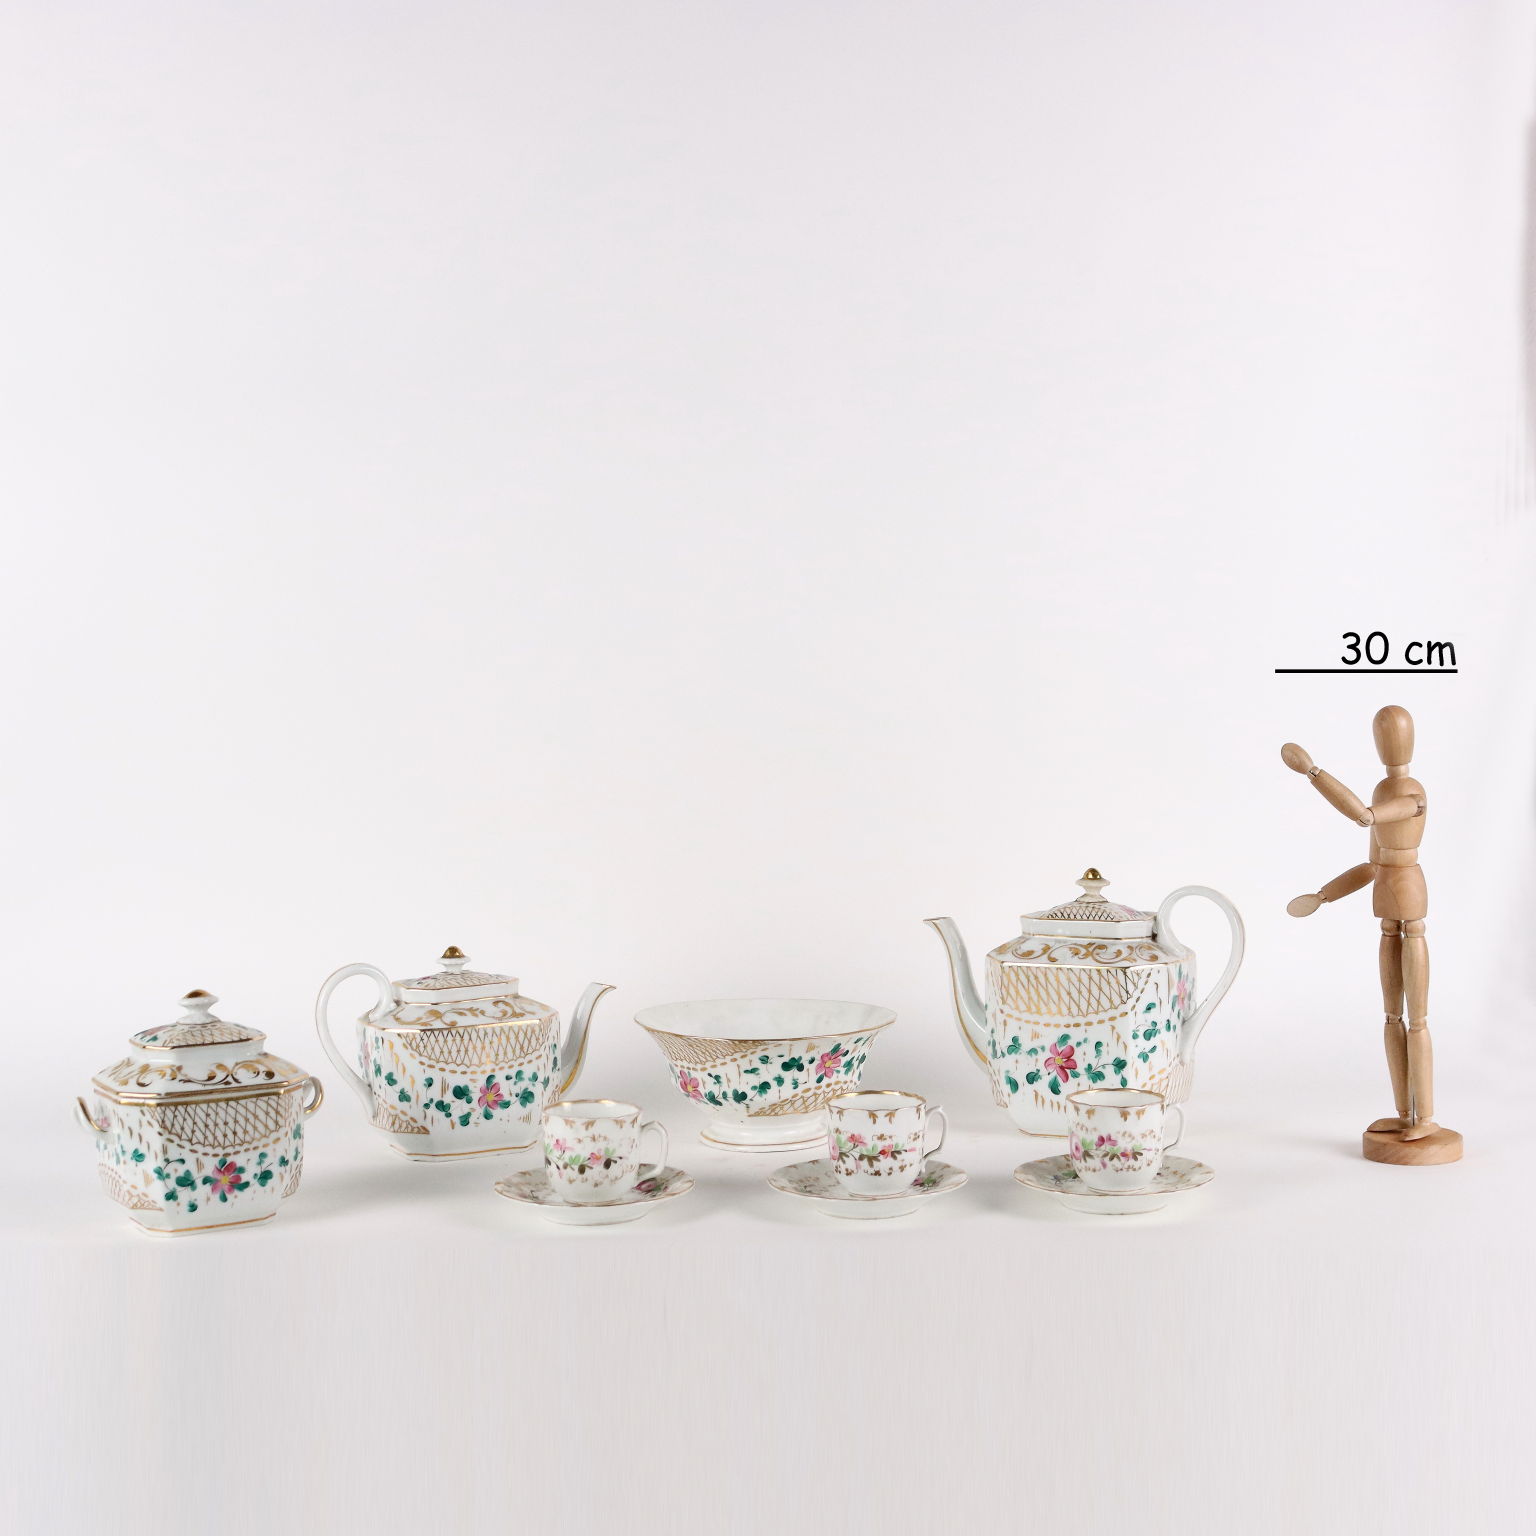 Servizio Antico The e Caffè Porcellana Bianca Europa '800 Decori oro